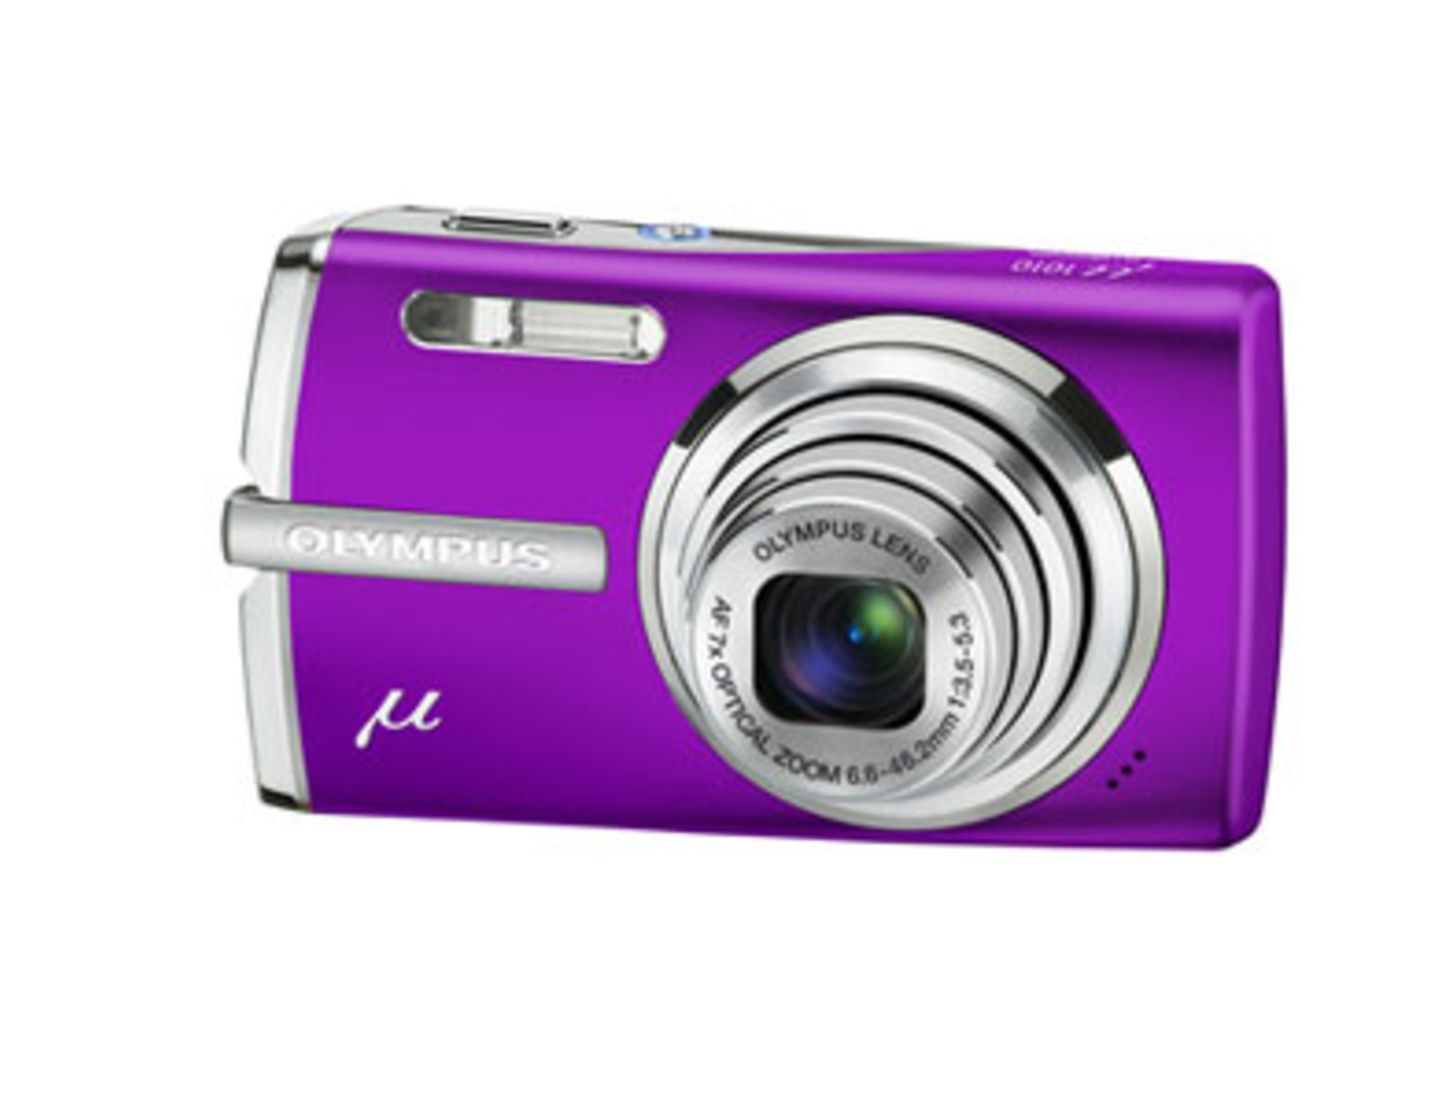 Gestochen scharfe Panoramaaufnahmen verspricht die Olympus 1010 Purple Digitalkamera. Außerdem 23 Aufnahmeprogramme, Gesichtserkennung und eine Videofunktion. Um 330 Euro bei Panasonic.